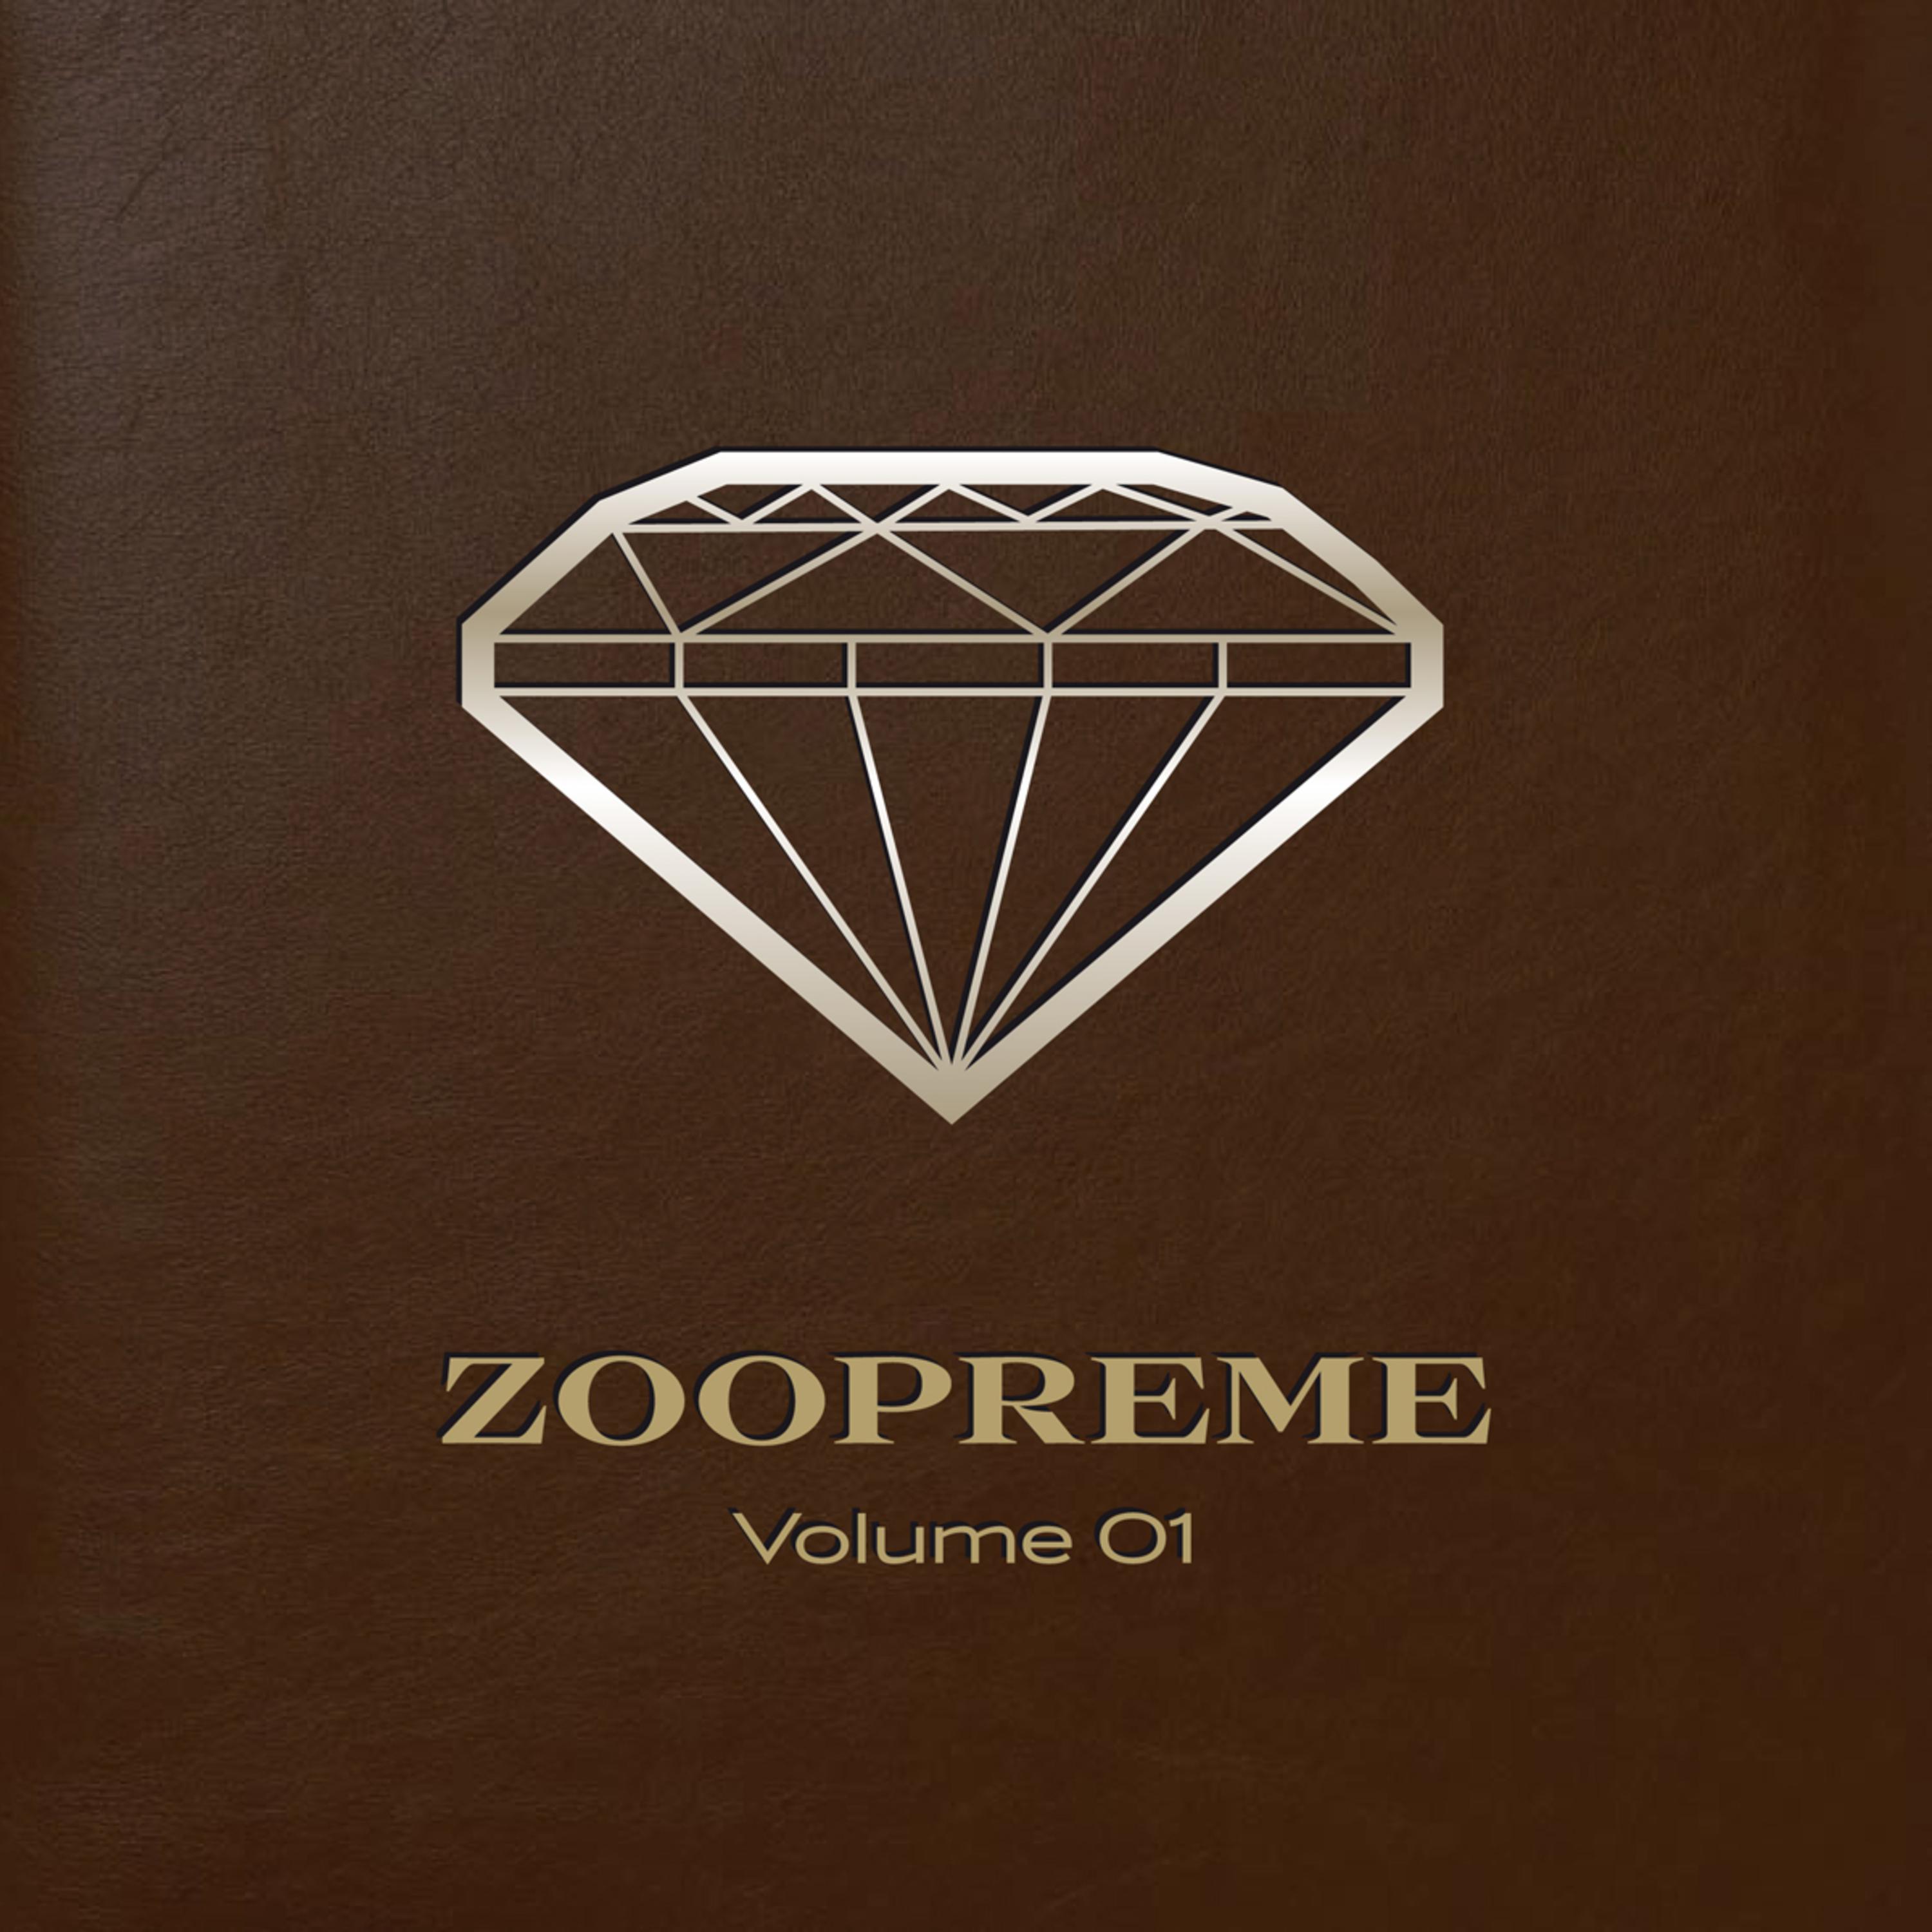 Zoopreme Volume 01